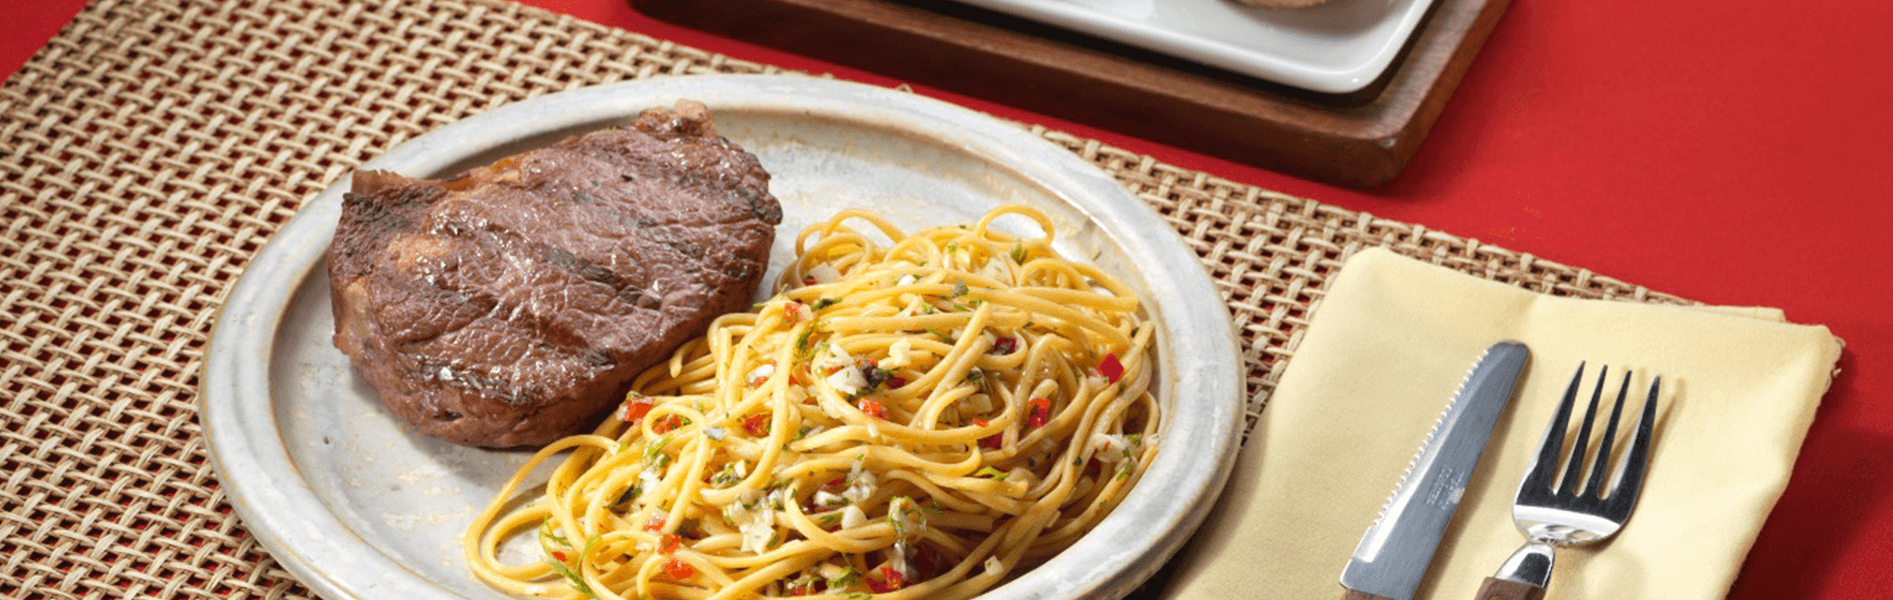 Spaghetti Doria sabor a Pollo Asado con carne asada